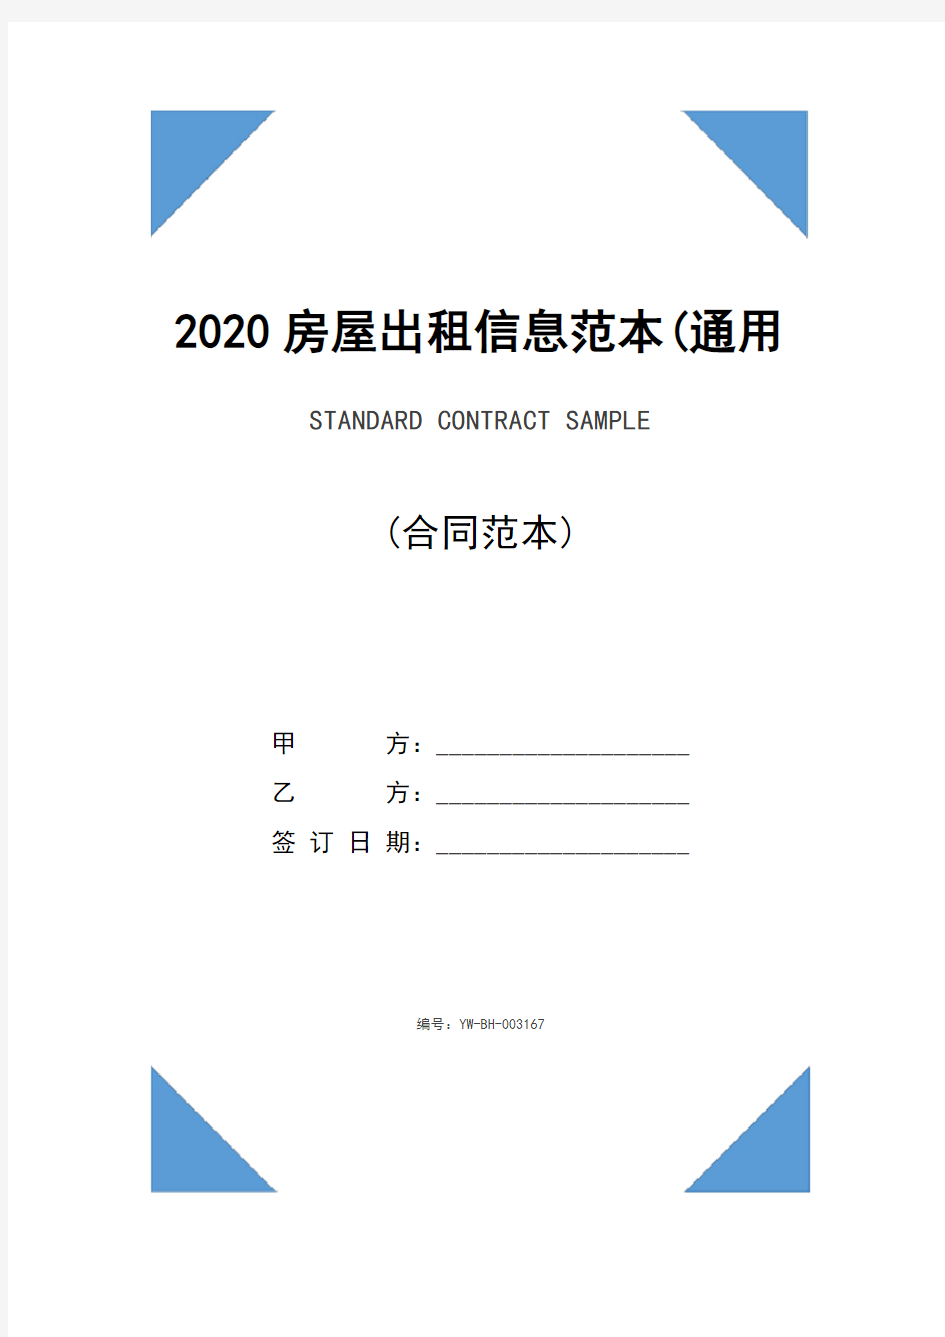 2020房屋出租信息范本(通用版)